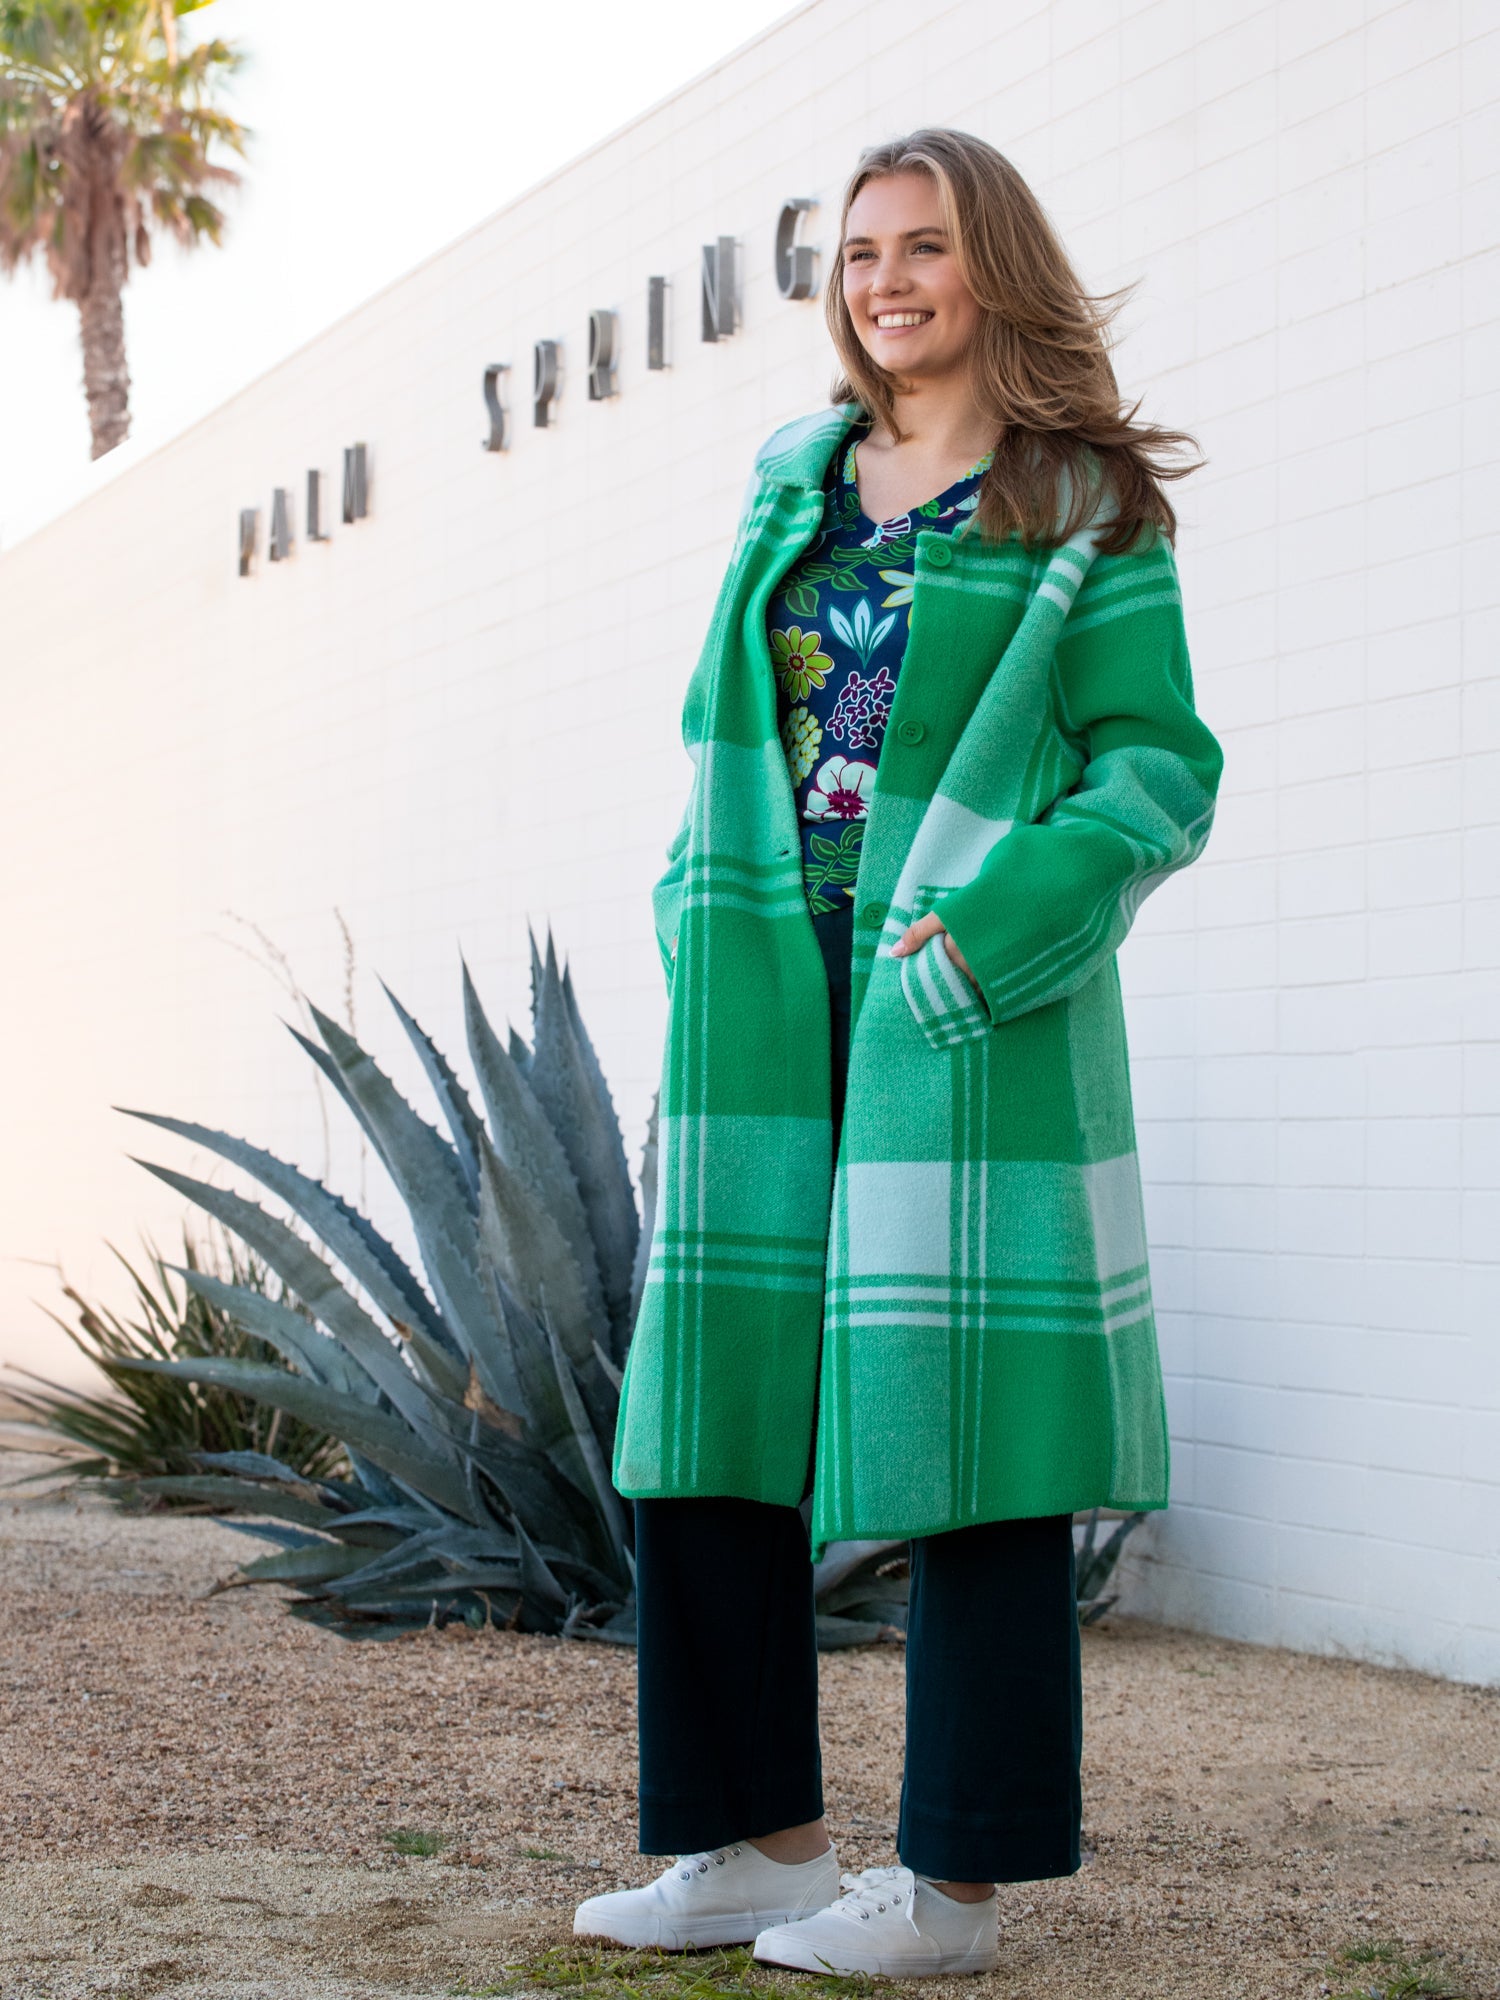 NATALIE coat Green Apple Plaid - Lesley Evers-Best Seller-coat-Imogen green 1